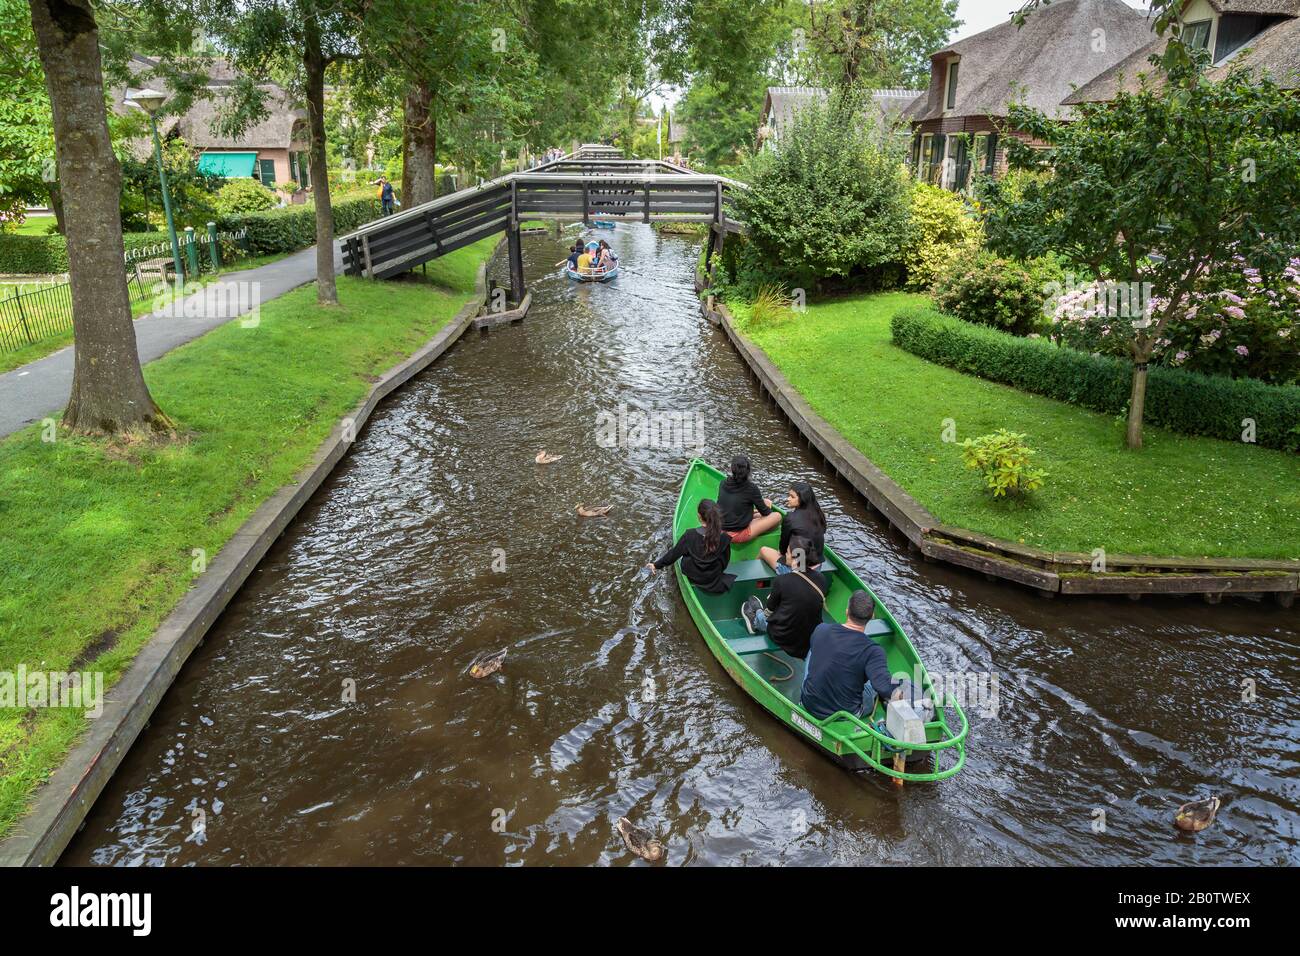 Giethoorn Village in Olanda è un ambiente completamente privo di auto e molto popolare tra la gente del posto e i turisti in tutto il mondo. Foto Stock